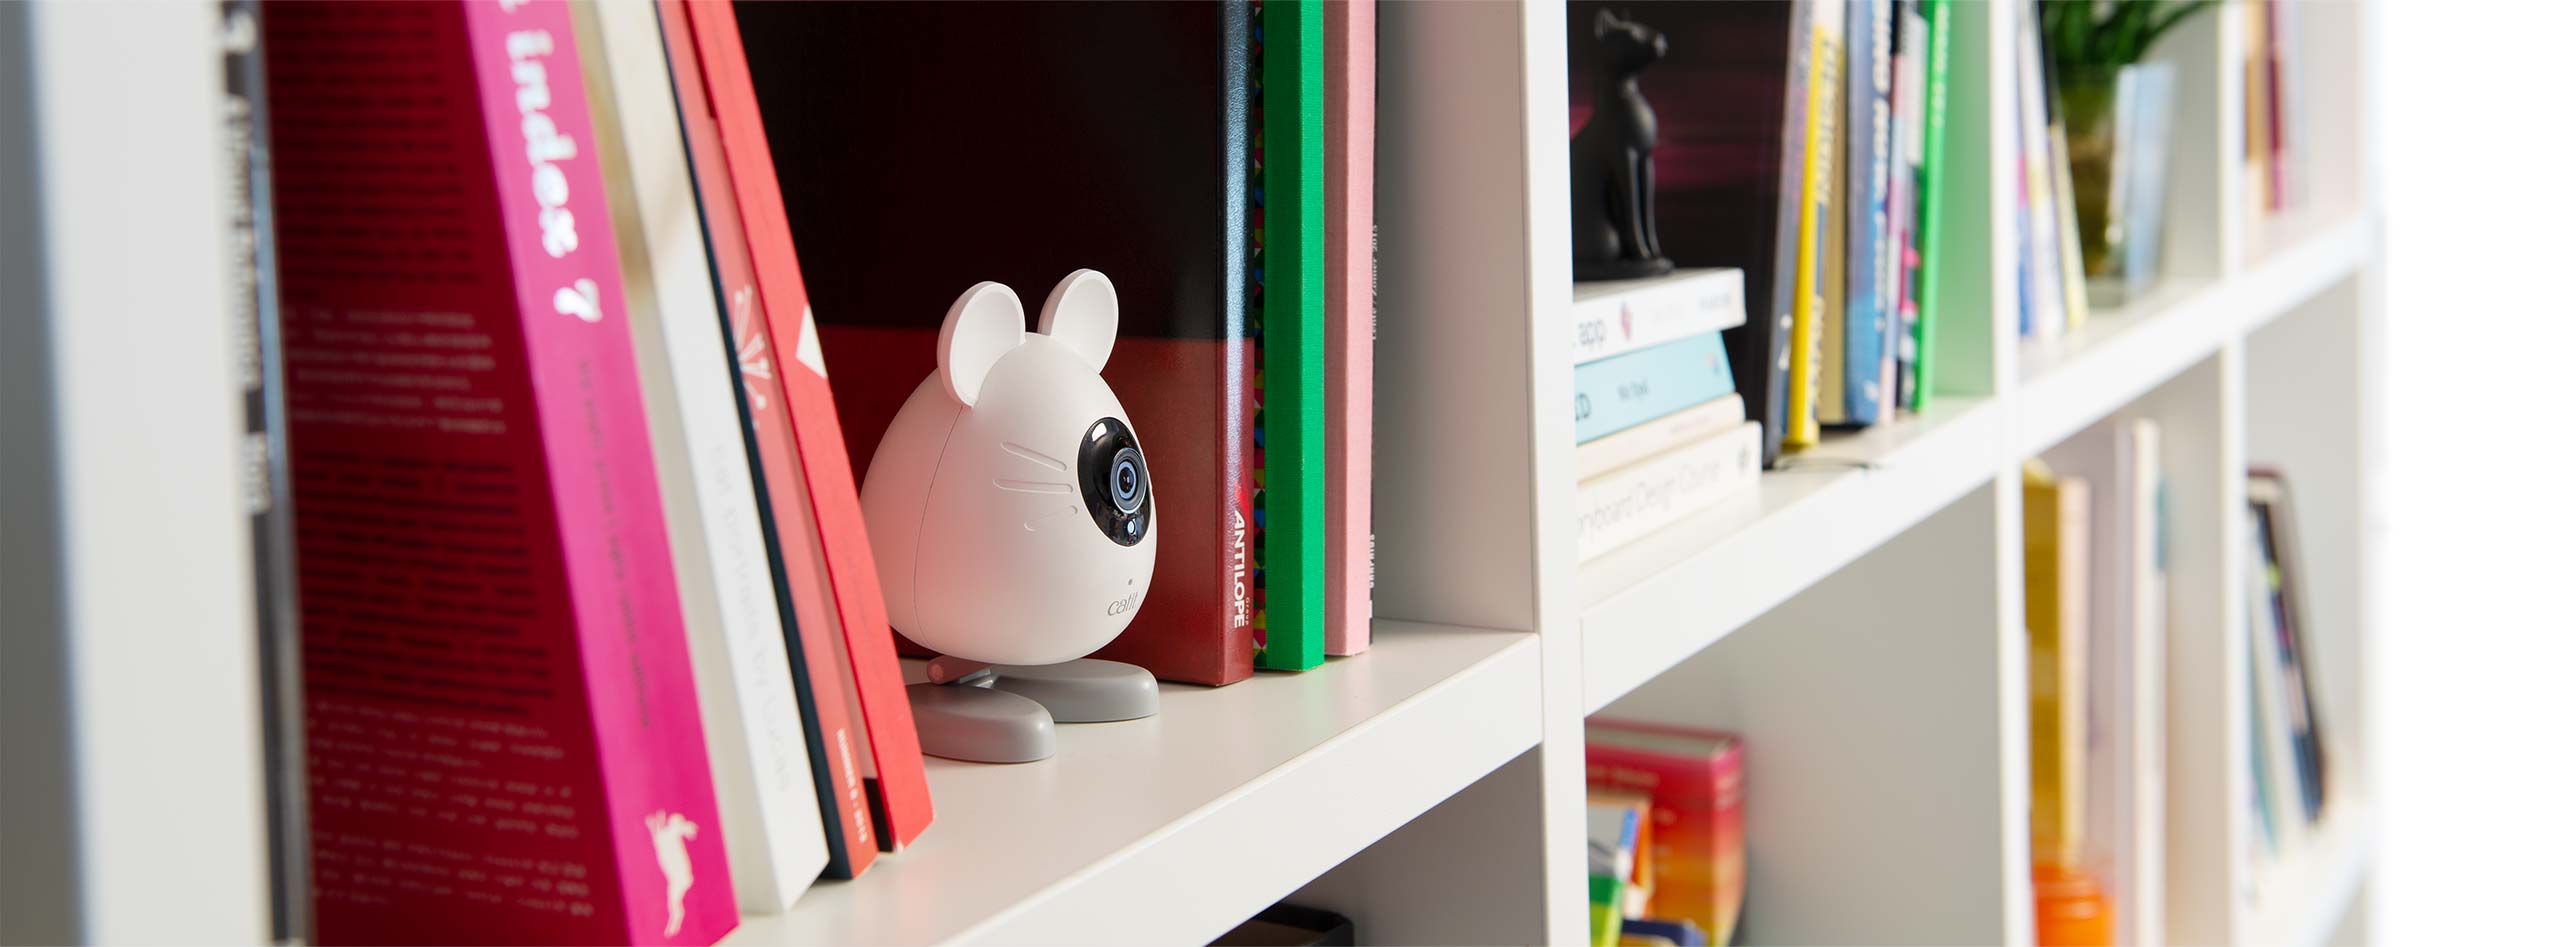 Telecamera PIXI Smart Mouse collocata sulla libreria